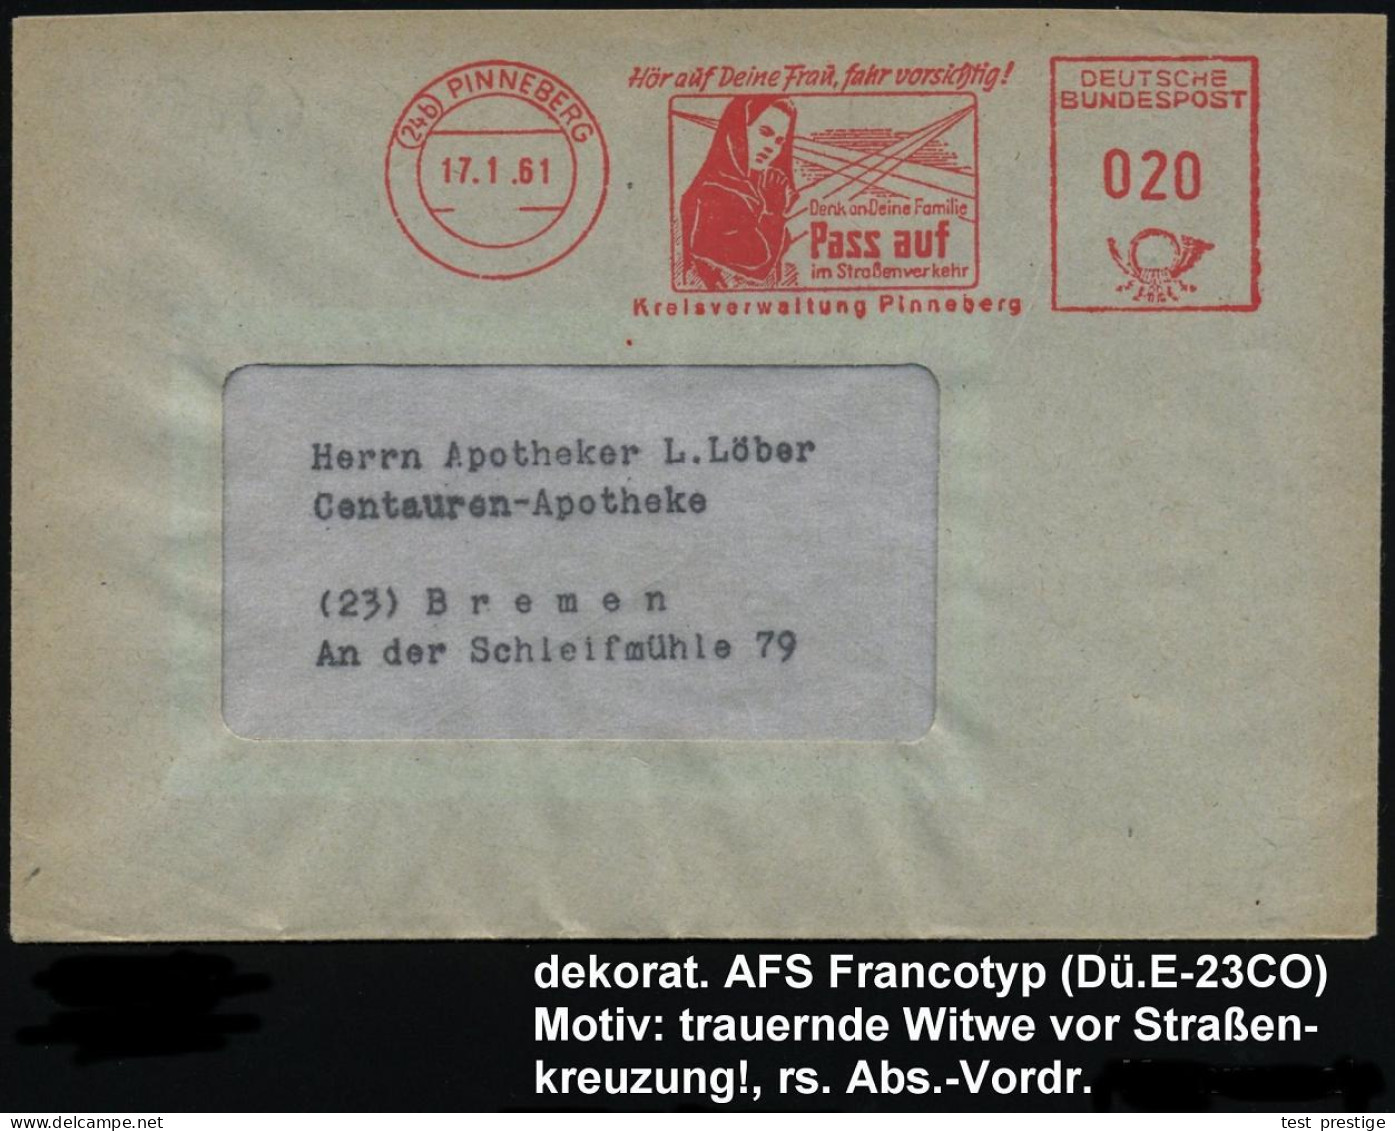 (24b) PINNEBERG/ Hör Auf Deine Frau,fahr Vorsichtig!../ Pass Auf/ Im Strassenverkehr/ Kreisverwaltung 1961 (17.1.) Selte - Accidentes Y Seguridad Vial